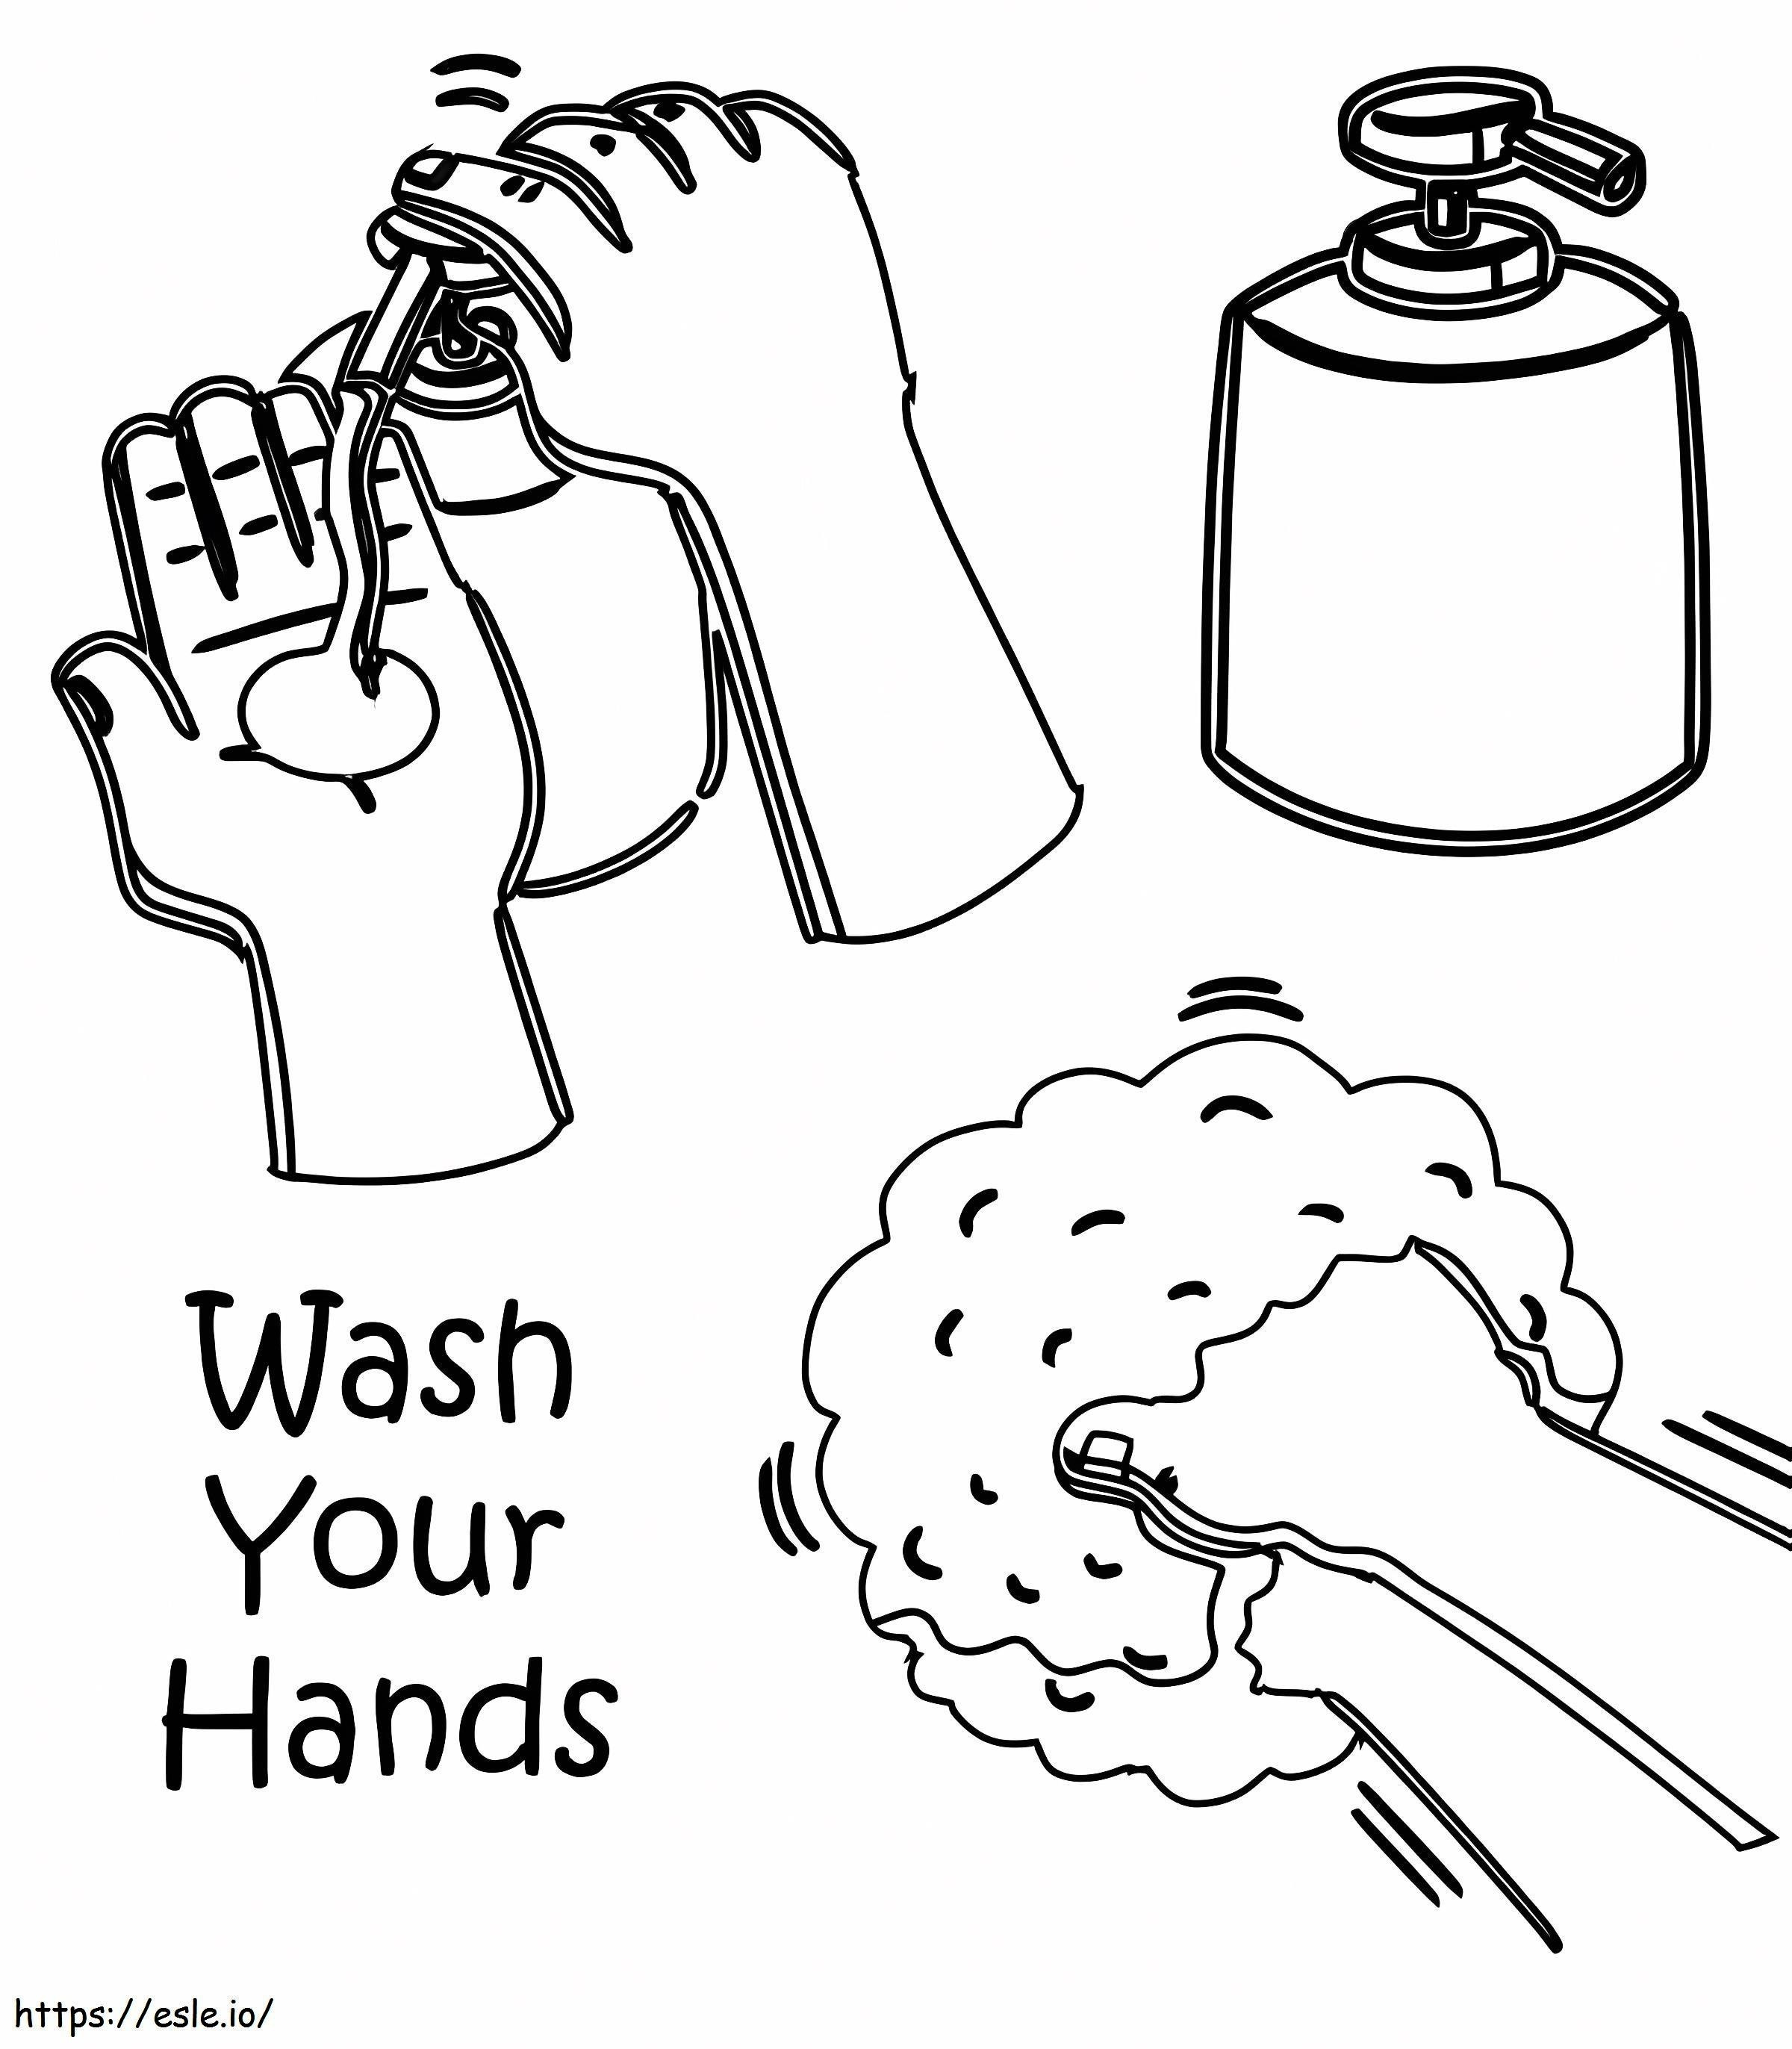 Amintiți-vă să vă spălați pe mâini de colorat